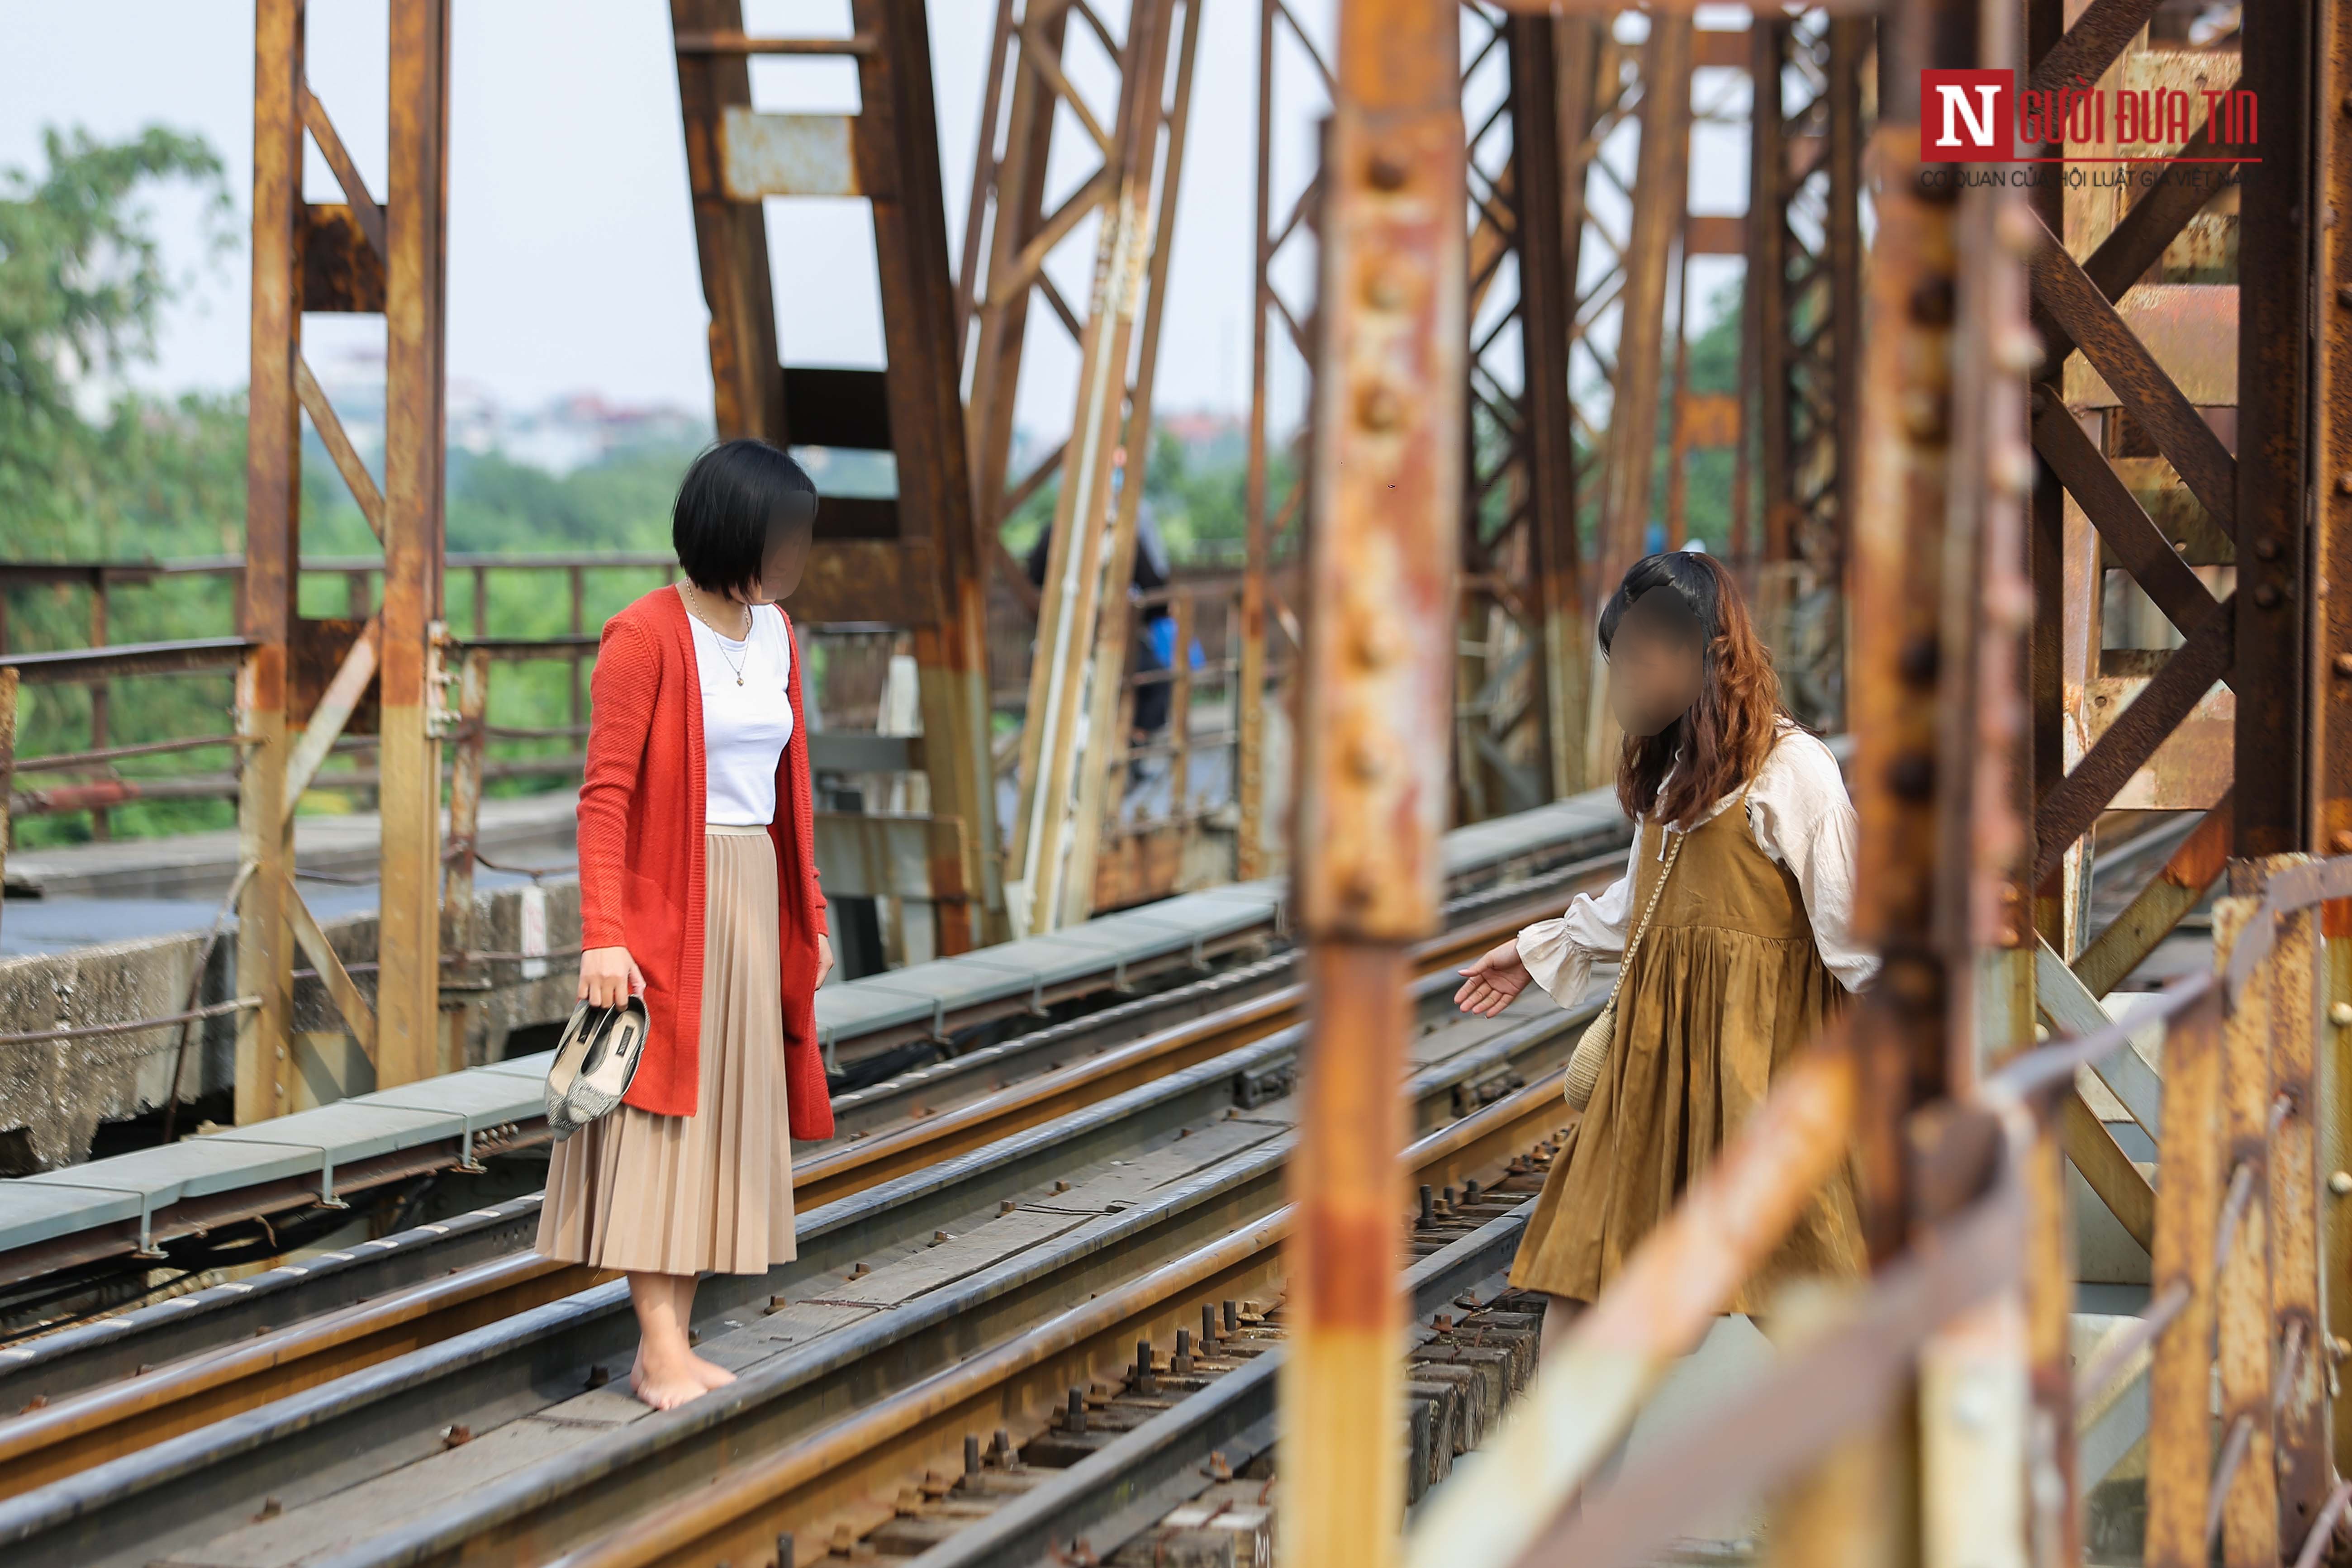 Tin nhanh - Bất chấp nguy hiểm, giới trẻ trèo sang đường tàu trên cầu Long Biên check in (Hình 13).